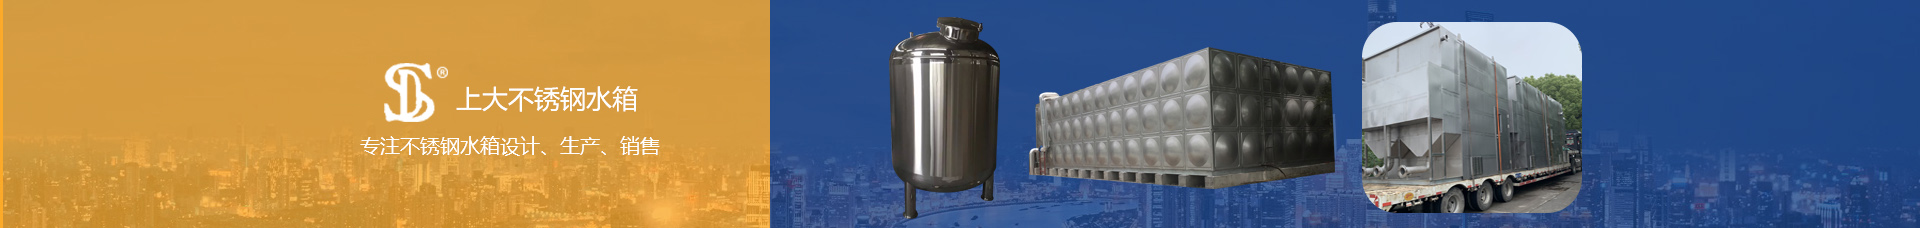 上大不锈钢水箱专注不锈钢水箱设计、生产、销售